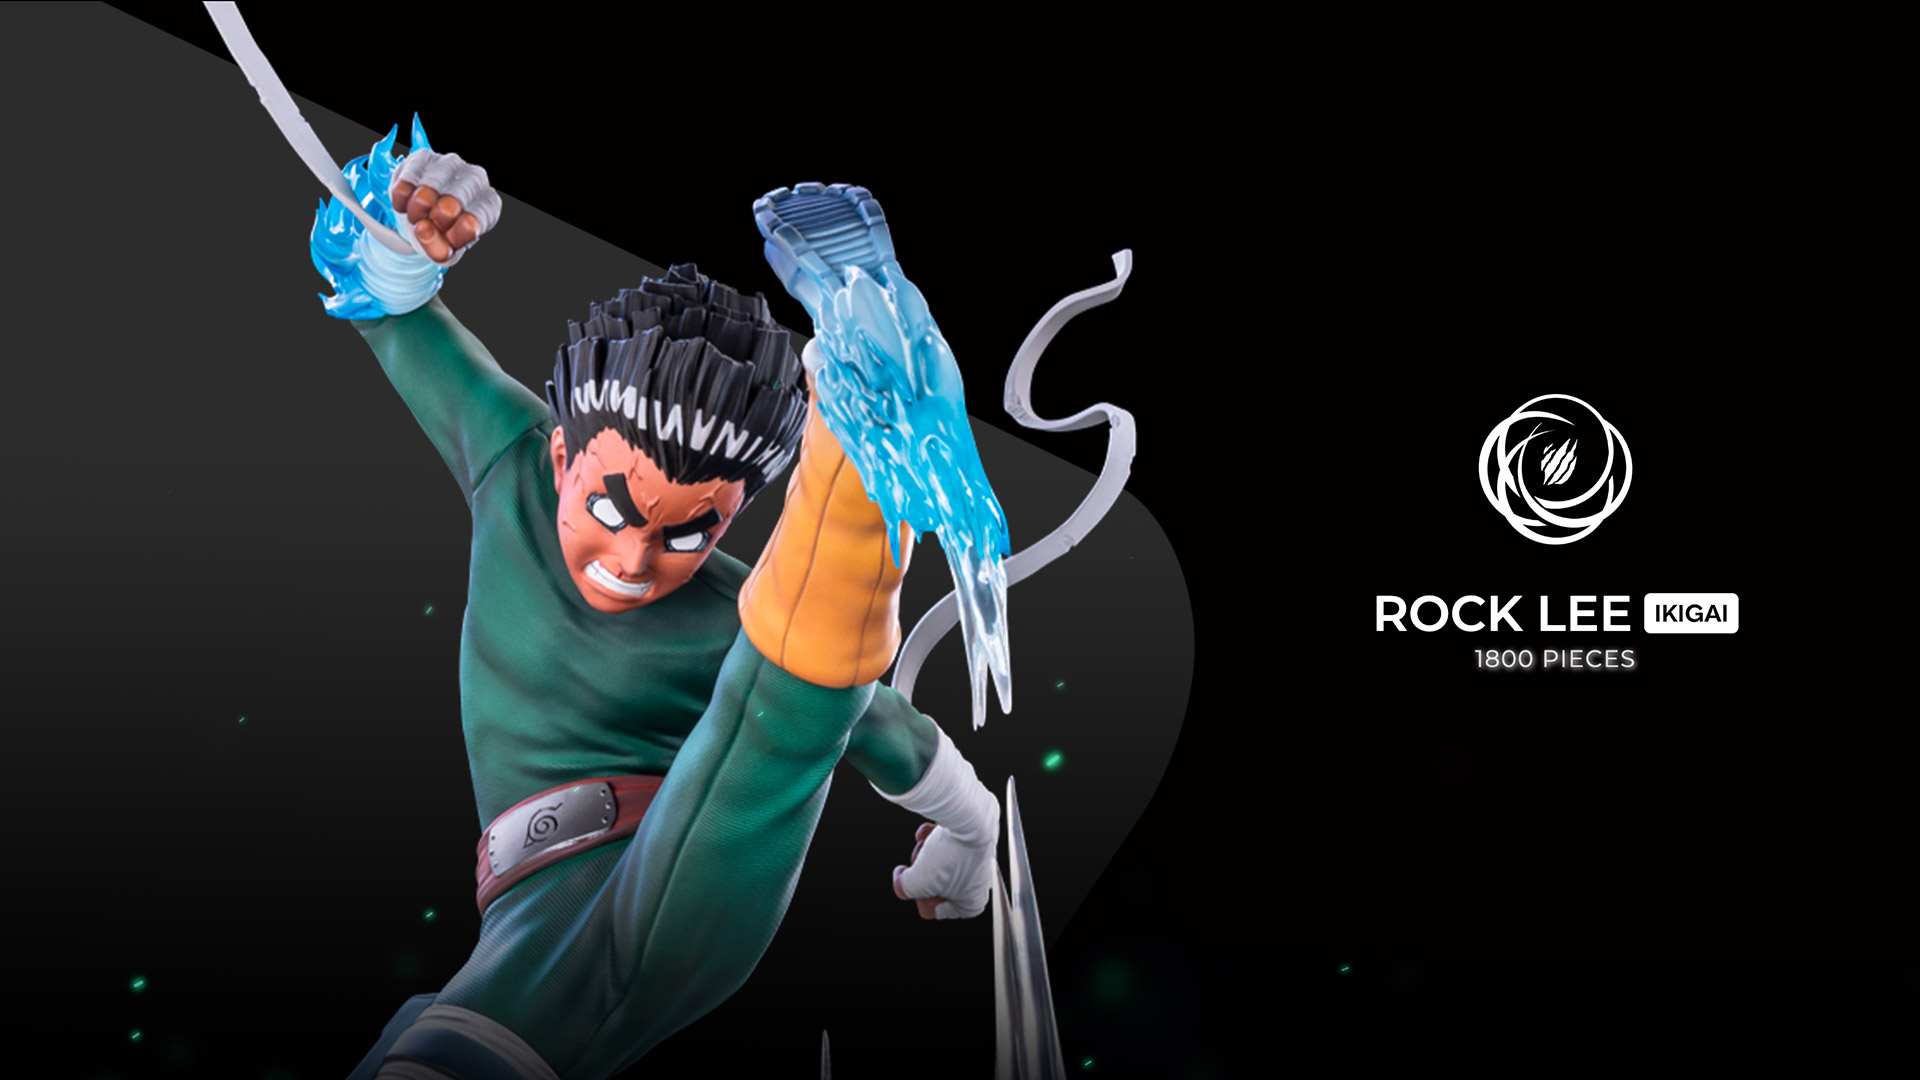 Cette statue représente Rock Lee révélant son réel pouvoir et ses impressionnantes capacités de ninja, résultats d’une détermination infaillible et d’un entrainement extrême !